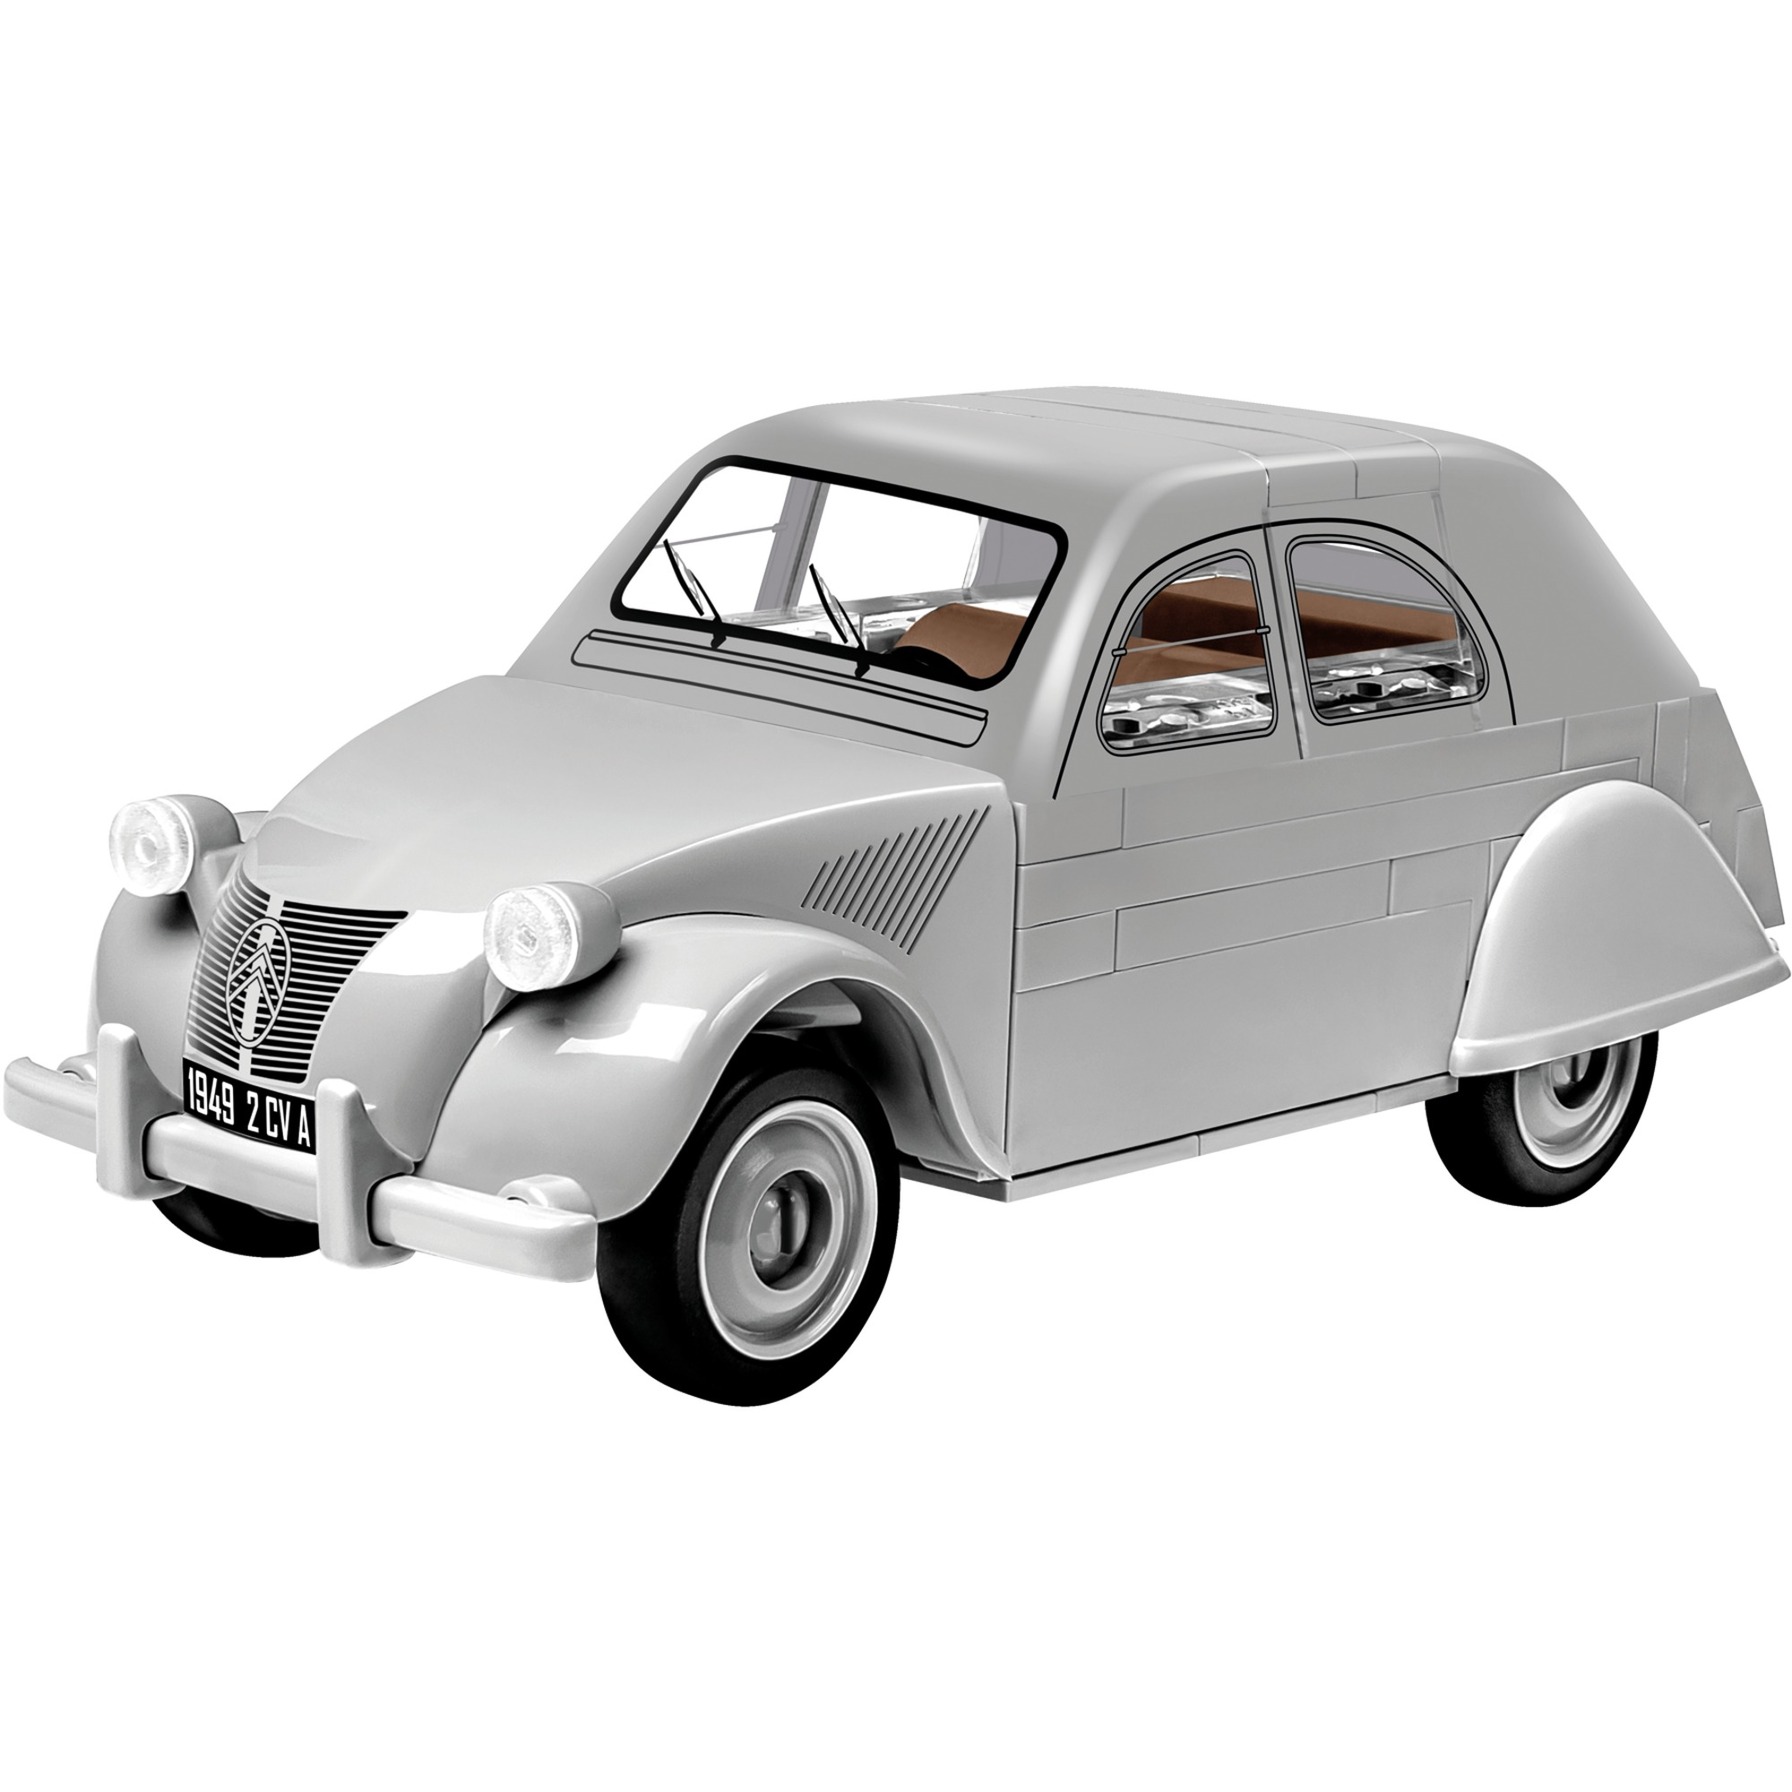 Image of Alternate - Citroën 2CV Typ A (1949), Konstruktionsspielzeug online einkaufen bei Alternate